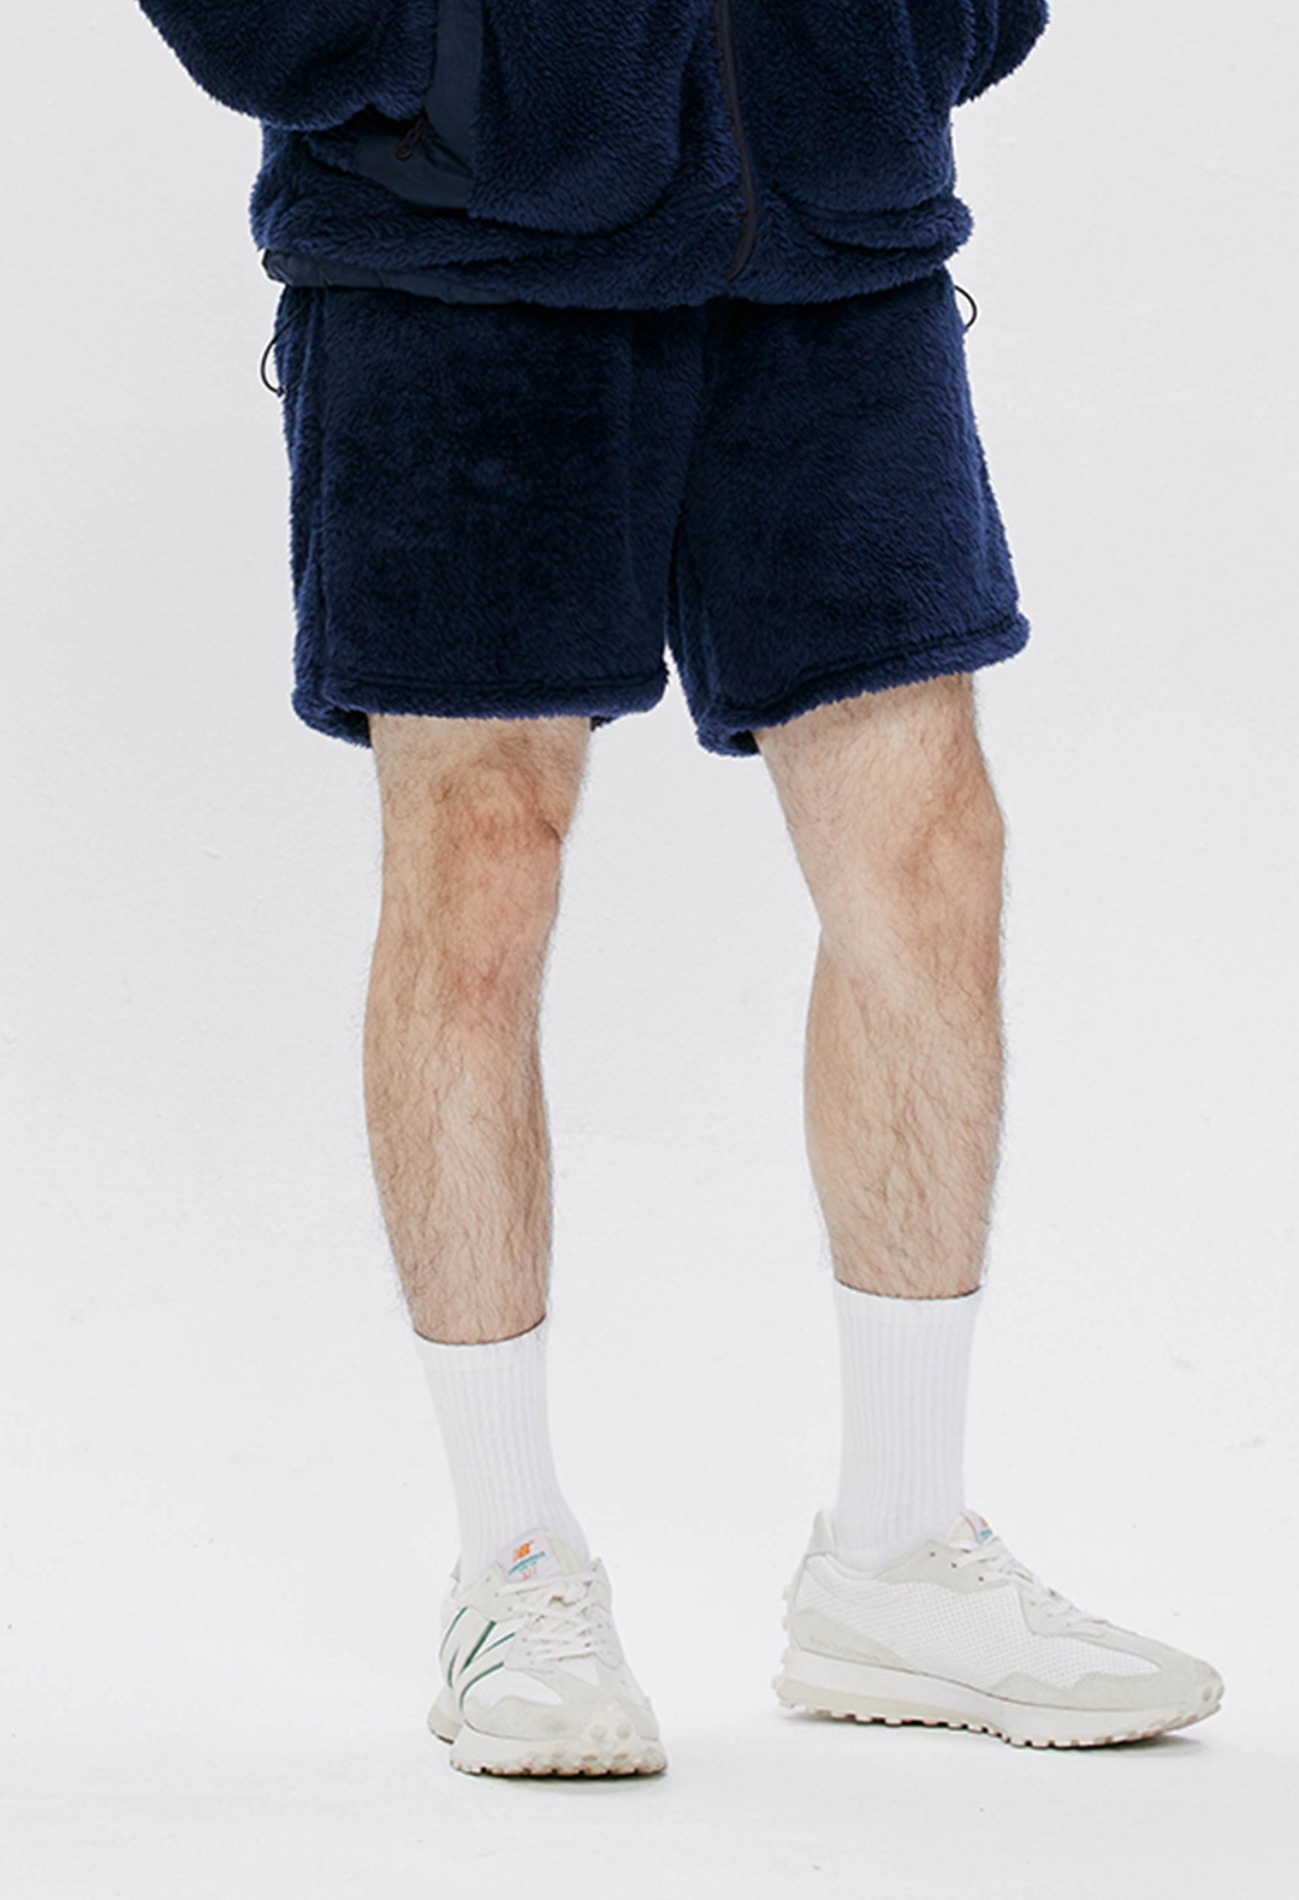 keek Tech Fleece Pillowdy Shorts by KEEK LAB - Navy 스트릿패션 유니섹스브랜드 커플시밀러룩 남자쇼핑몰 여성의류쇼핑몰 후드티 힙색